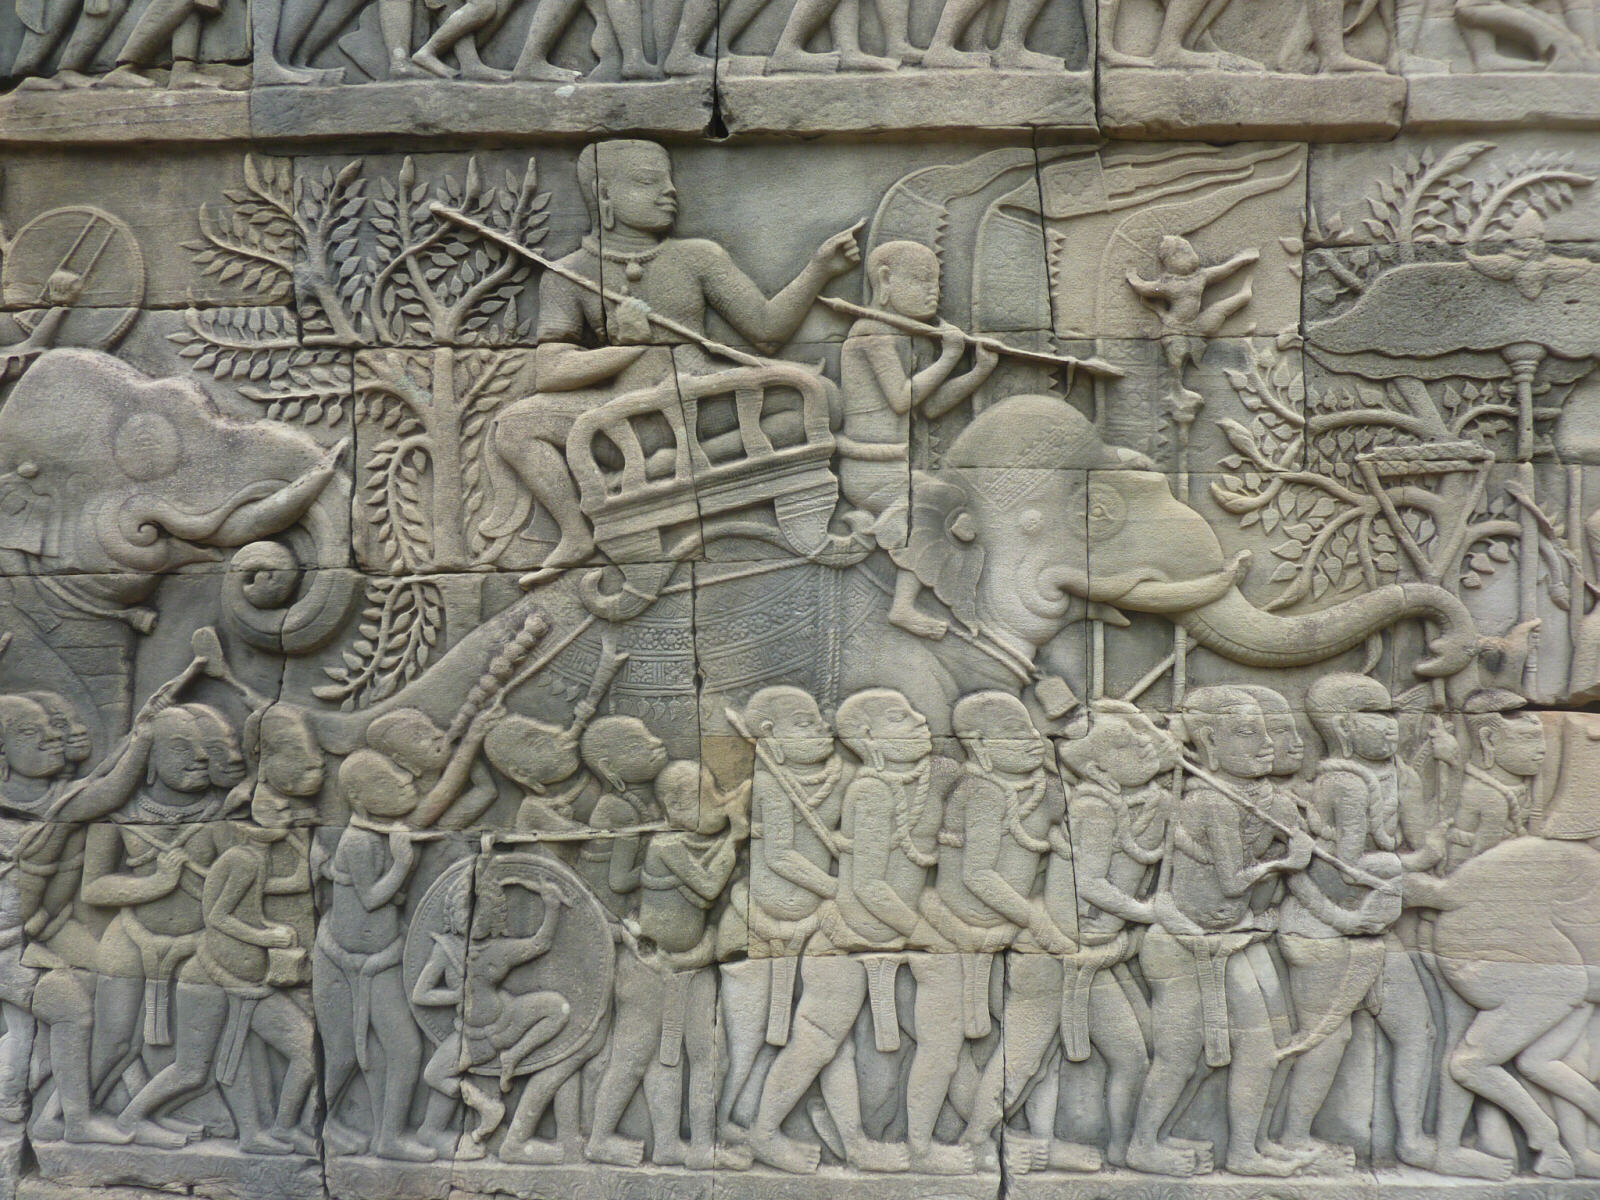 Carvings on the base of the Bayon at Angkor